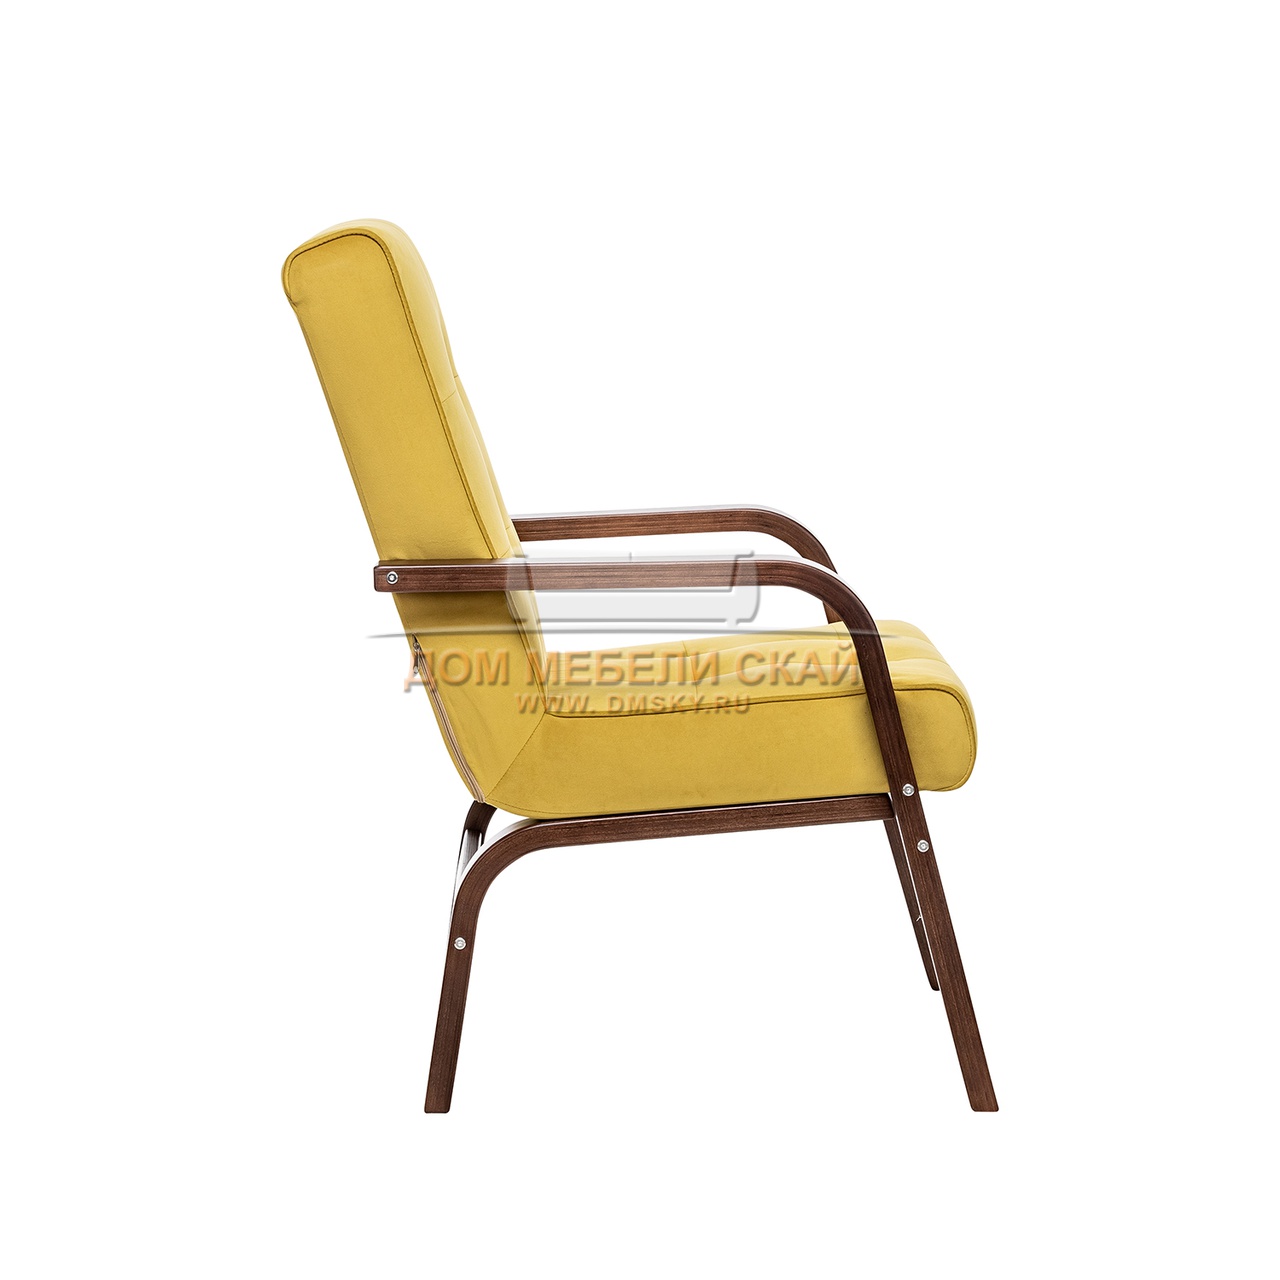 Кресло Leset Модена, велюр V28 желтый/орех текстура - купить в Москве  недорого по цене 14 800 руб. (арт. B10047326) | Дом мебели Скай